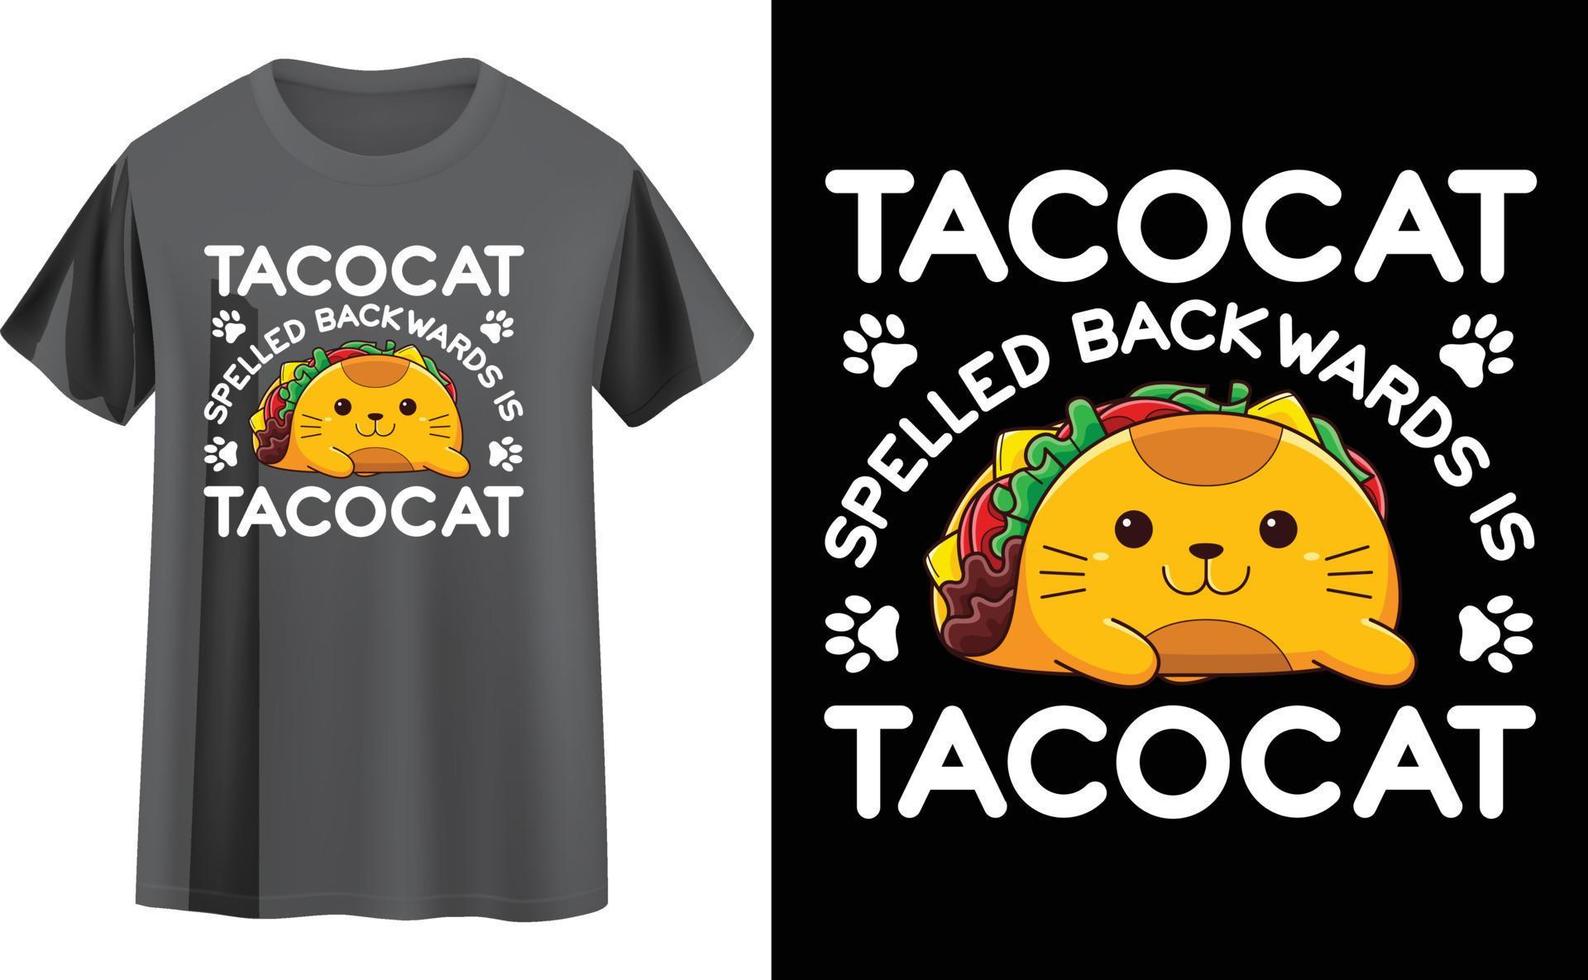 huisdieren t-shirt ontwerp vector